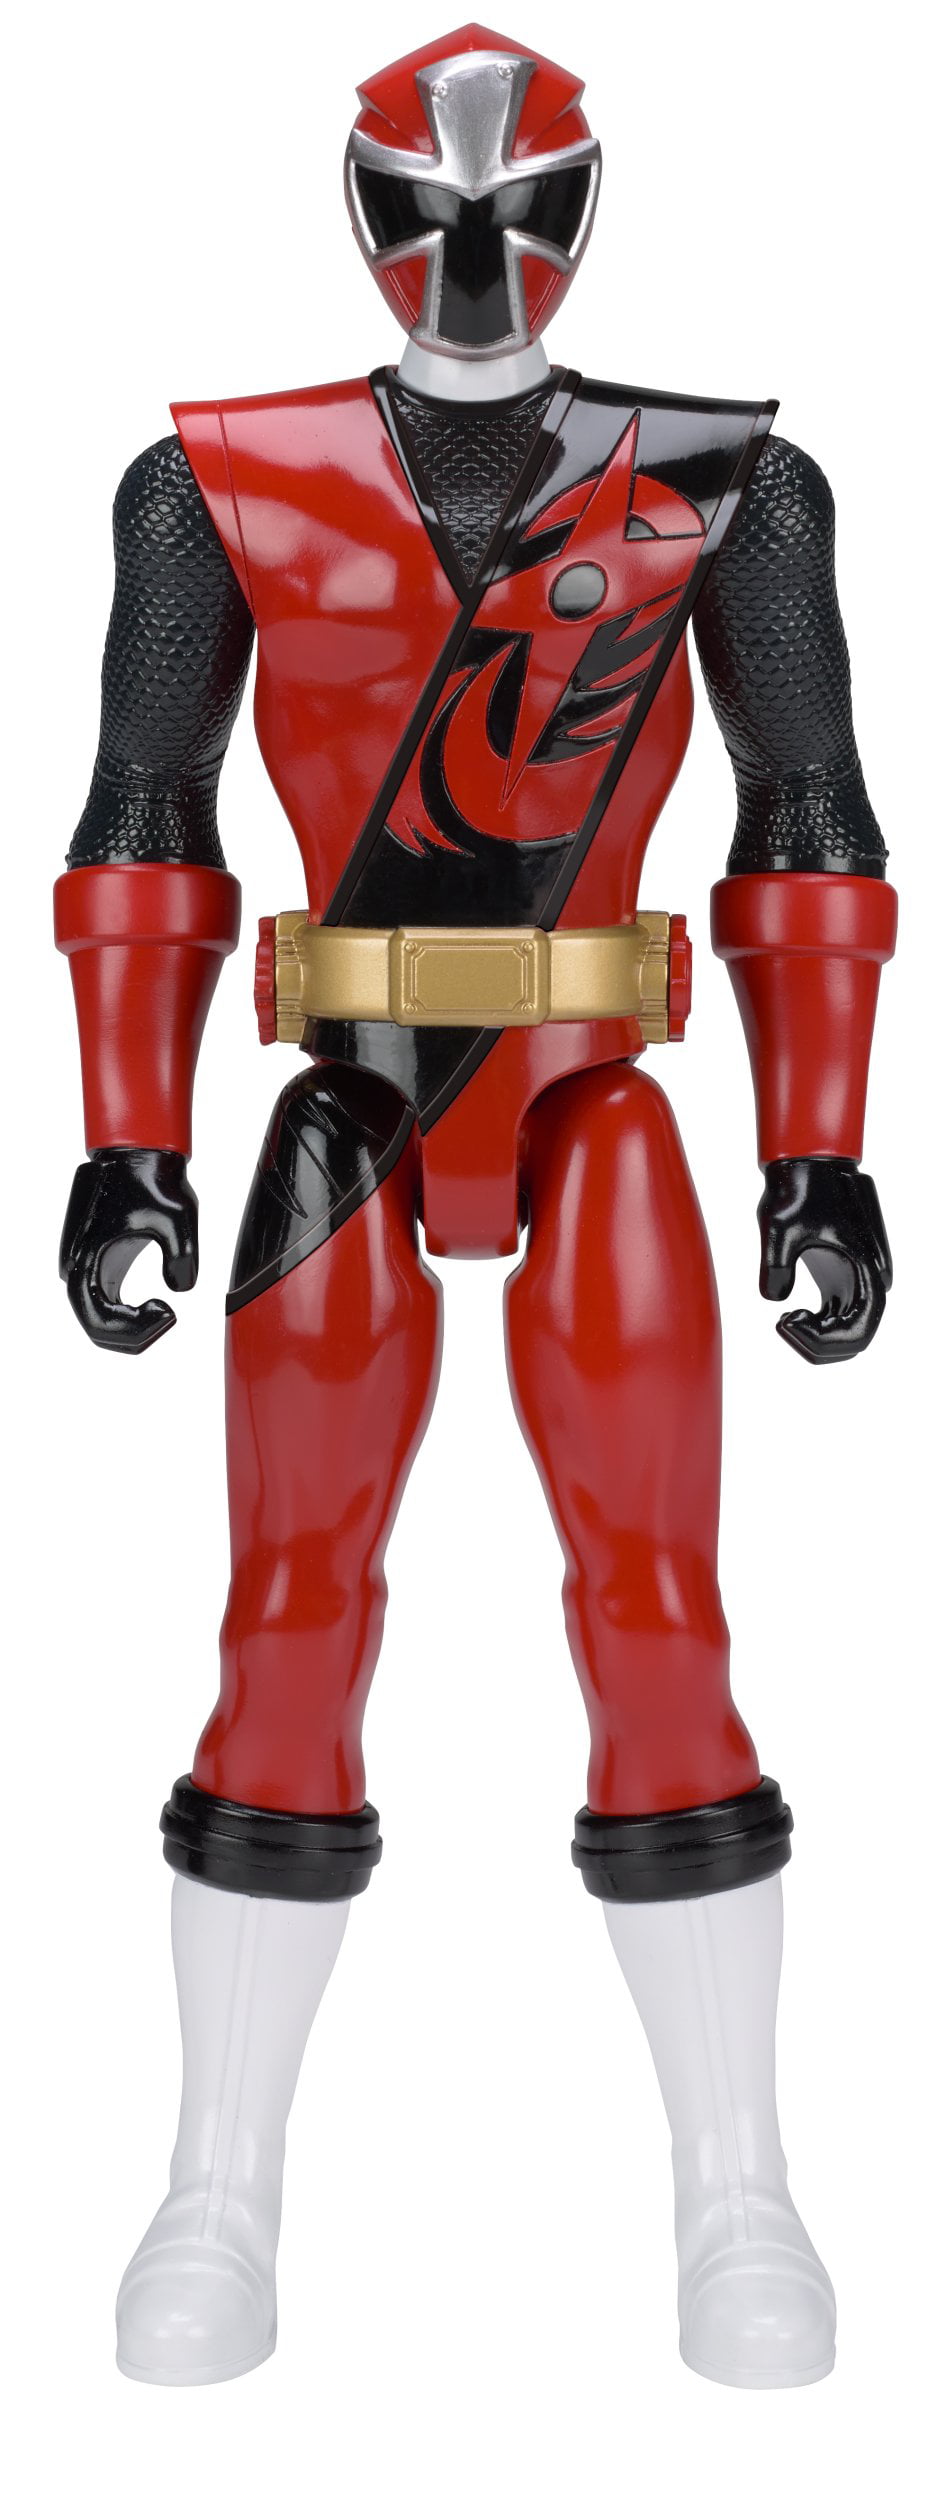 power rangers super ninja steel figures